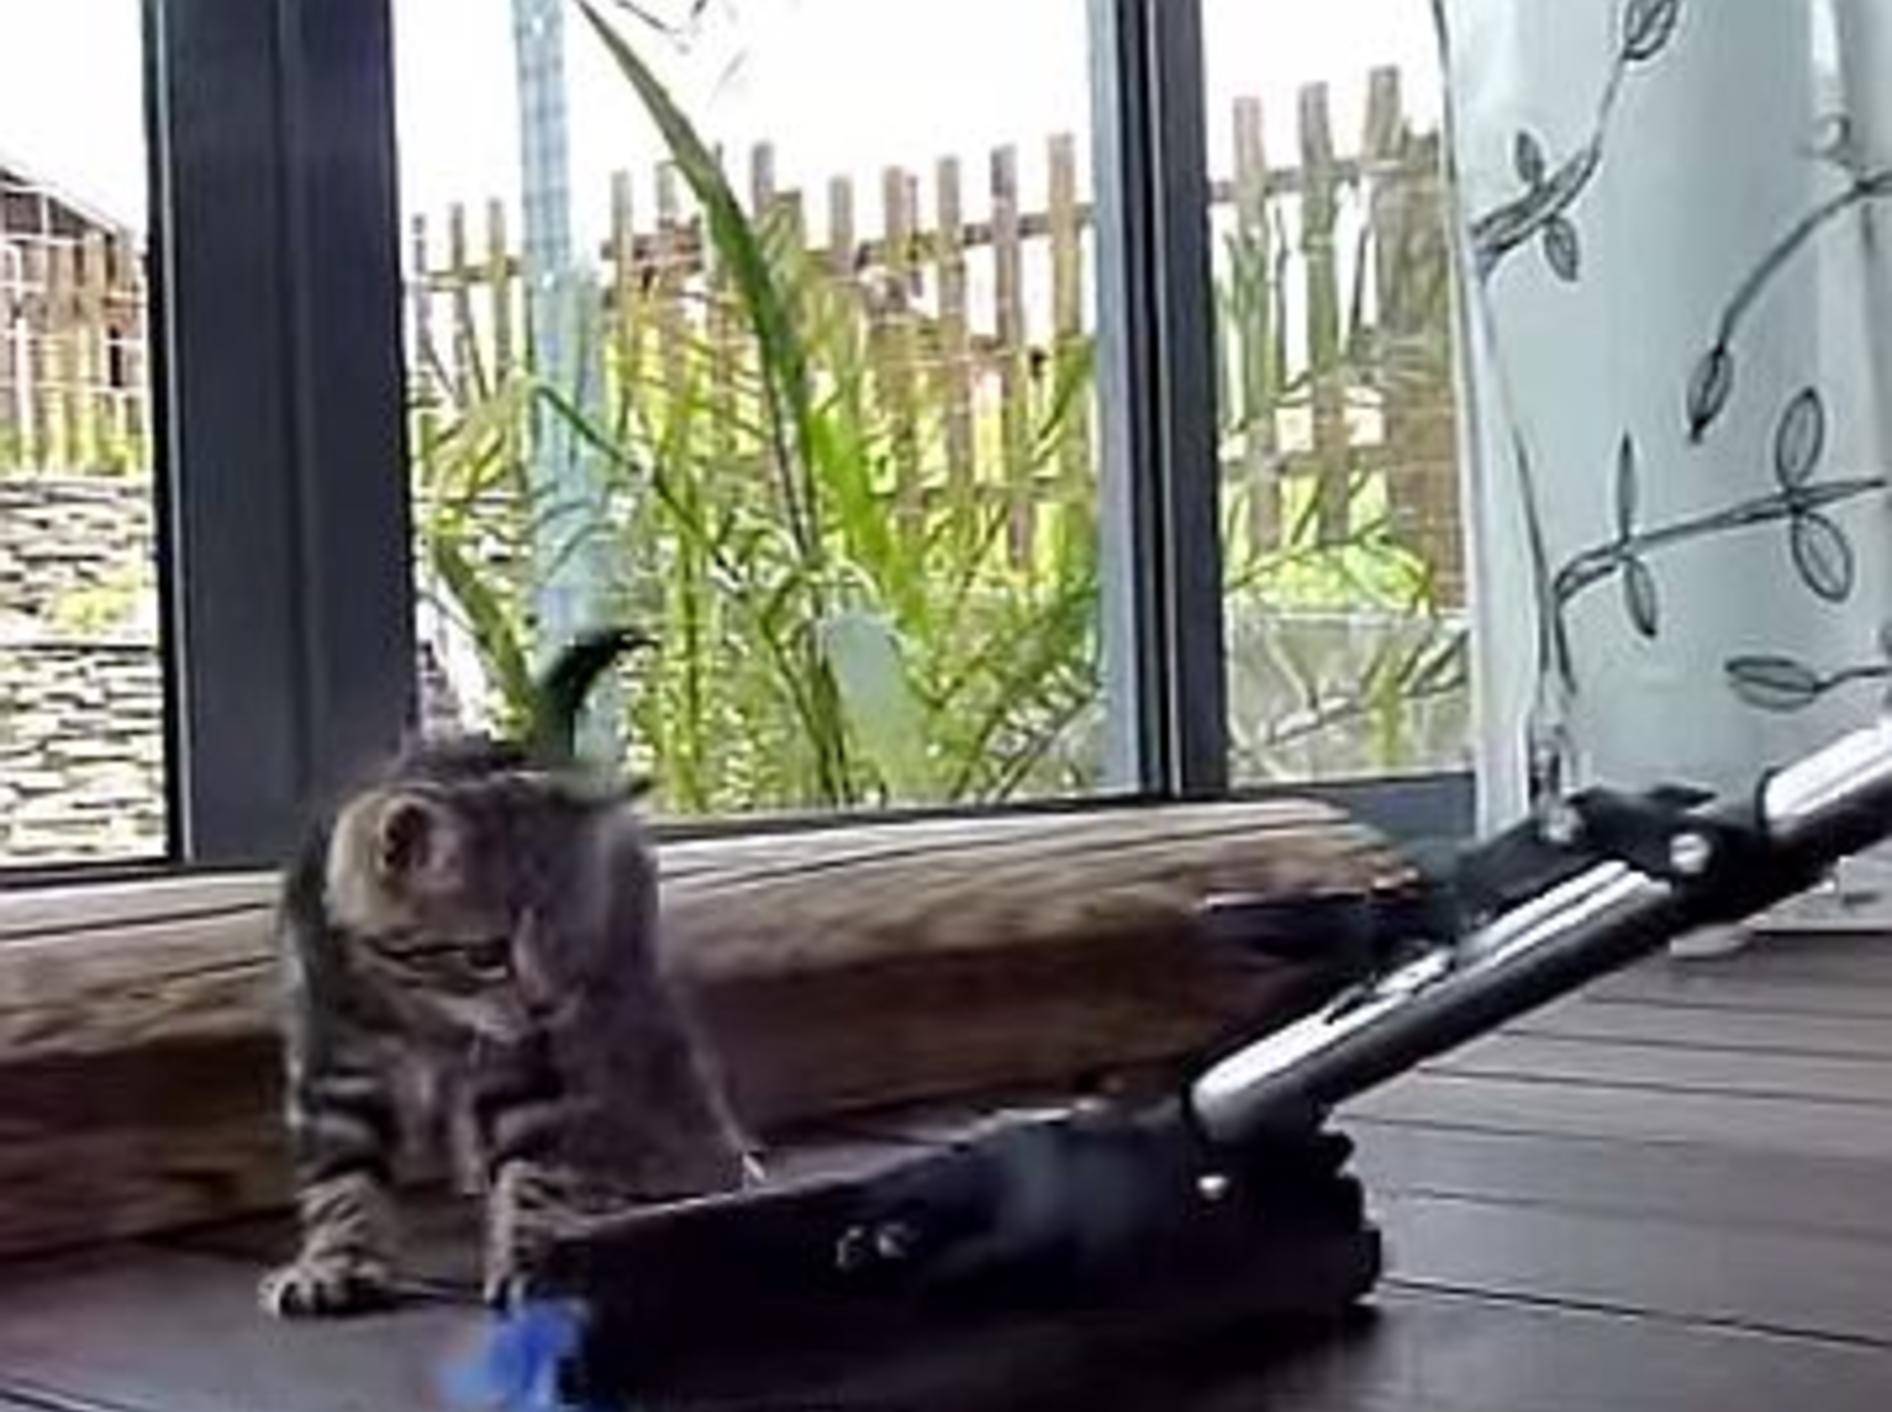 Katzenbaby spielt mit Wischmopp – Bild: Youtube / Funnycatsandnicefish